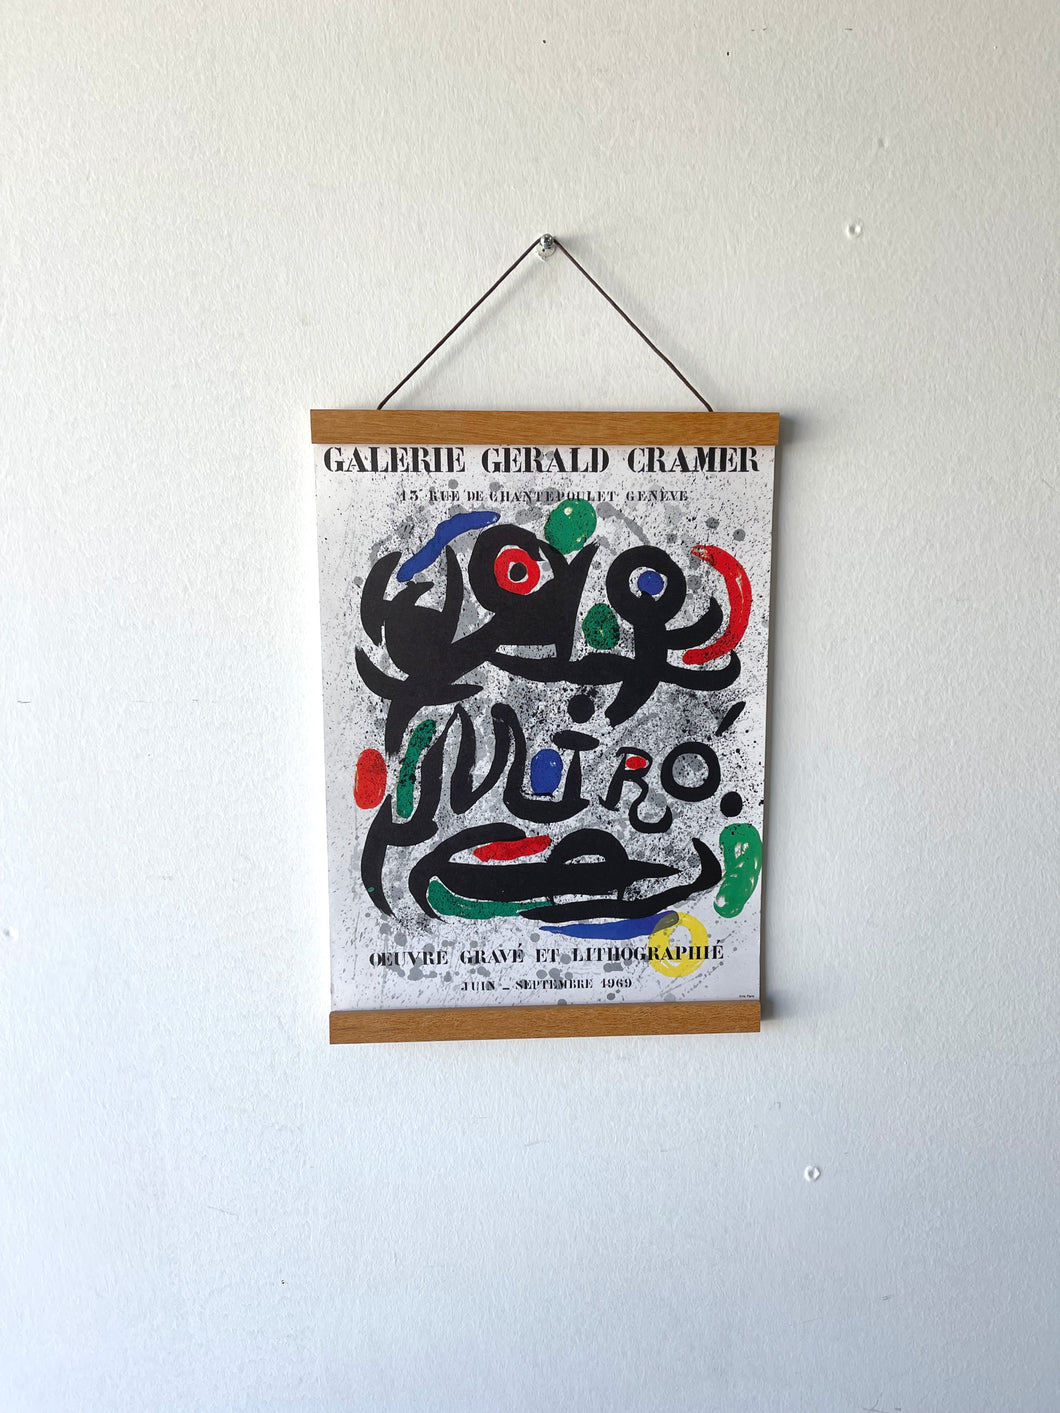 Miró 'Gallerie Gerald Cramer' lithograph